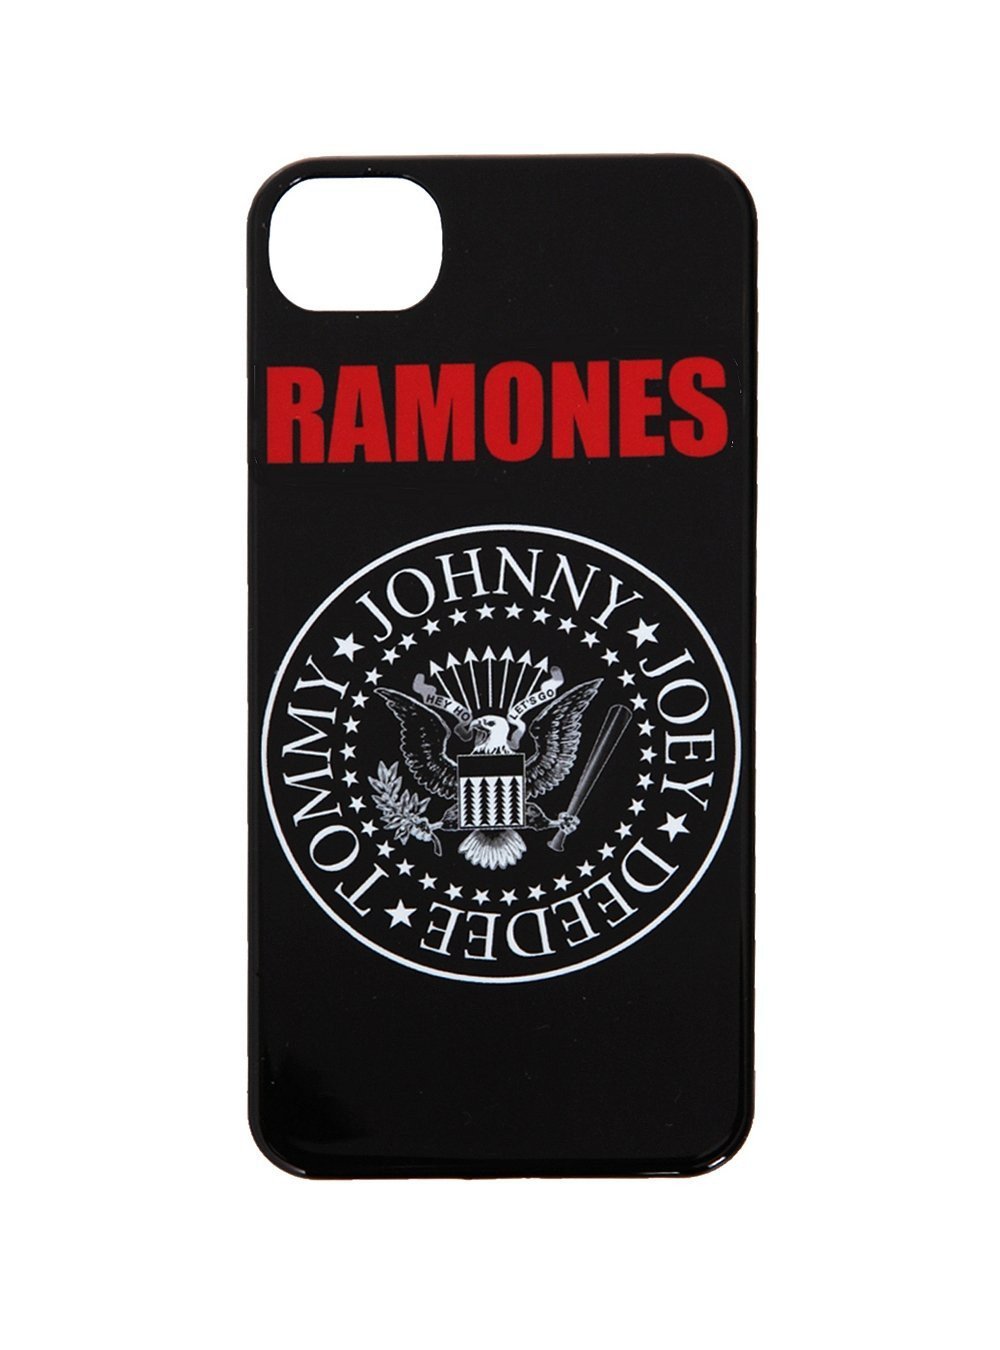 Ramones iPhone 5 Case